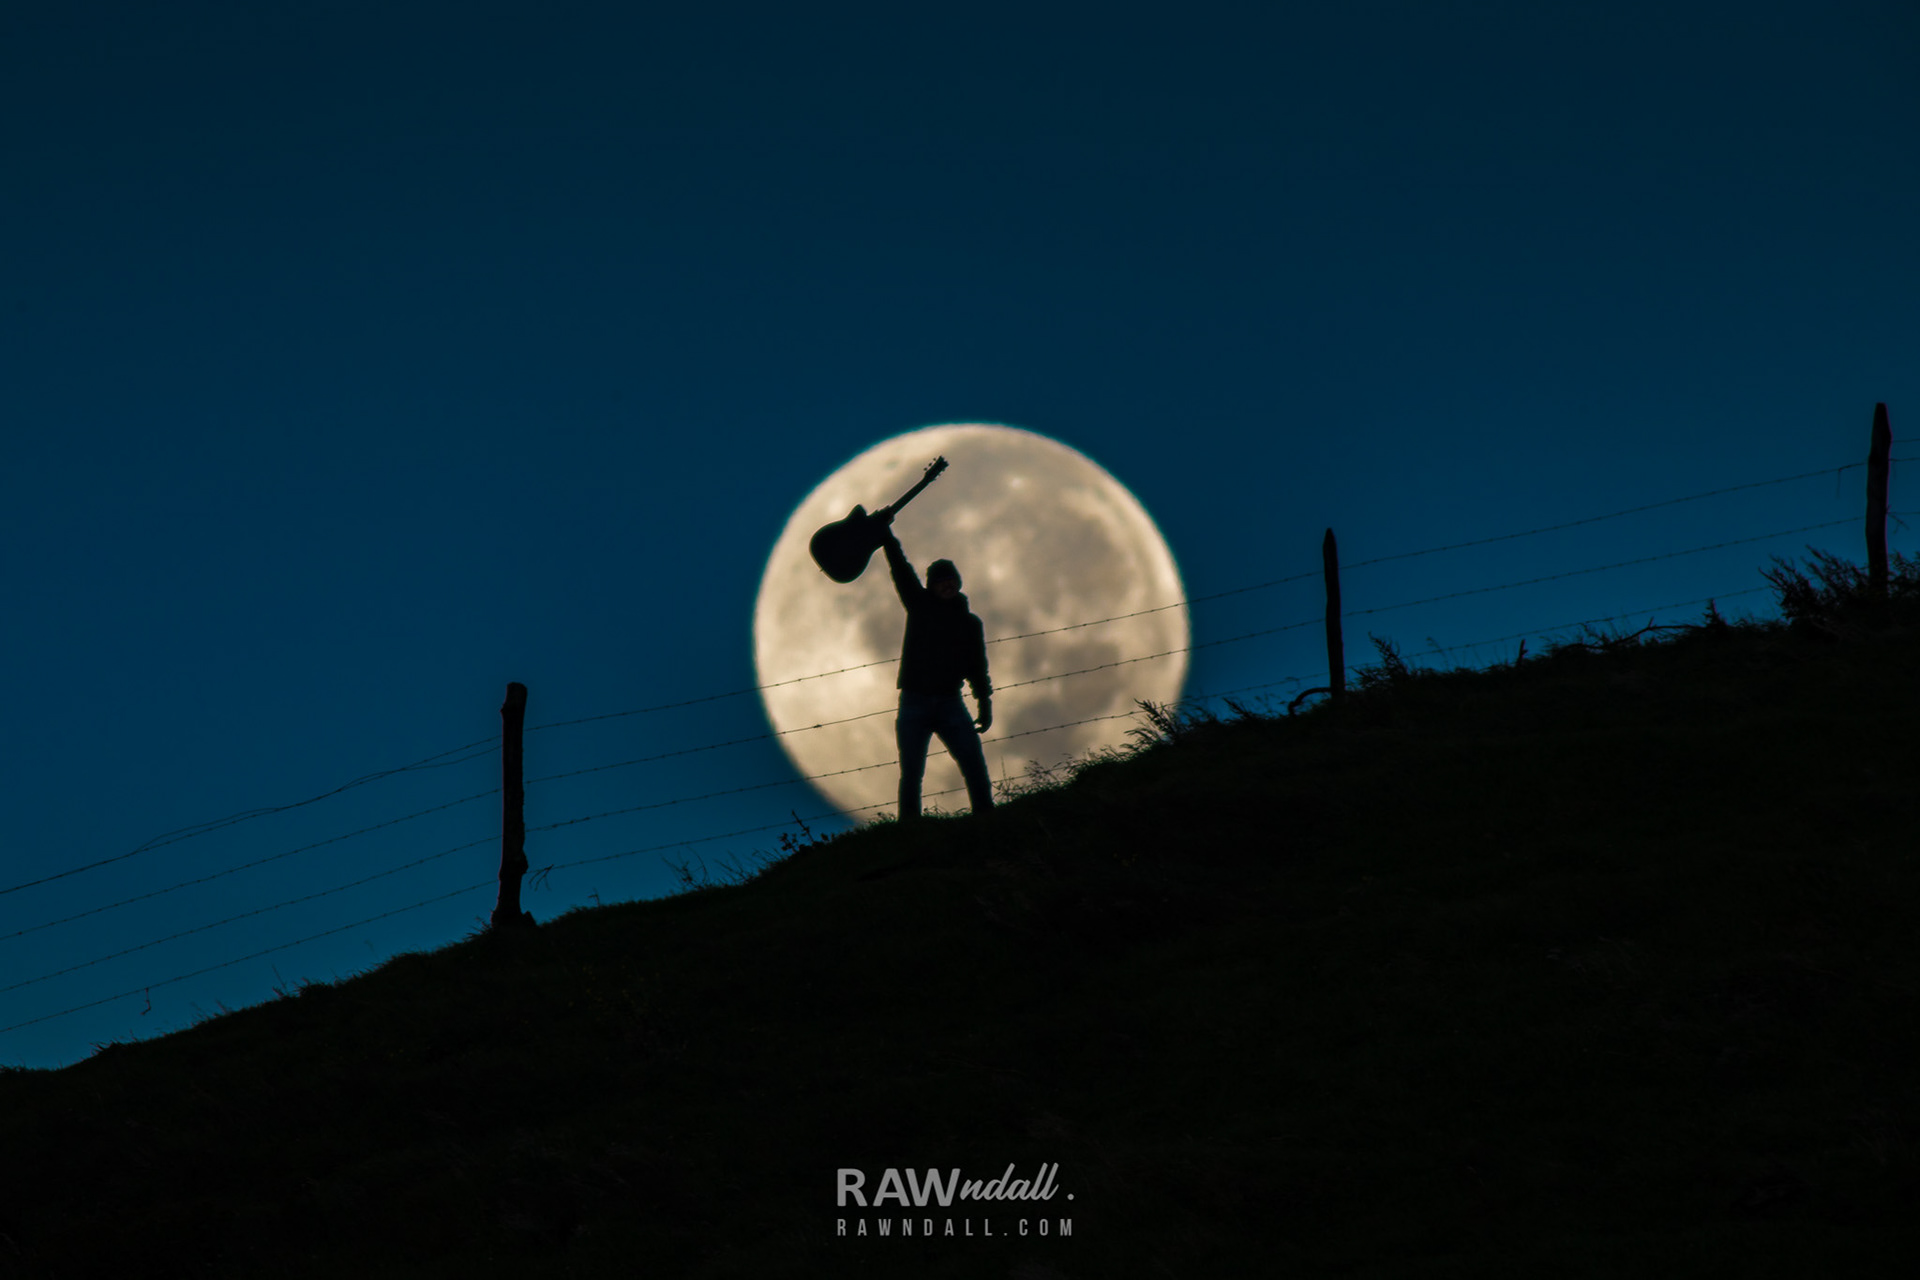 Silueta de una persona levantando una guitarra y la luna llena detrás.